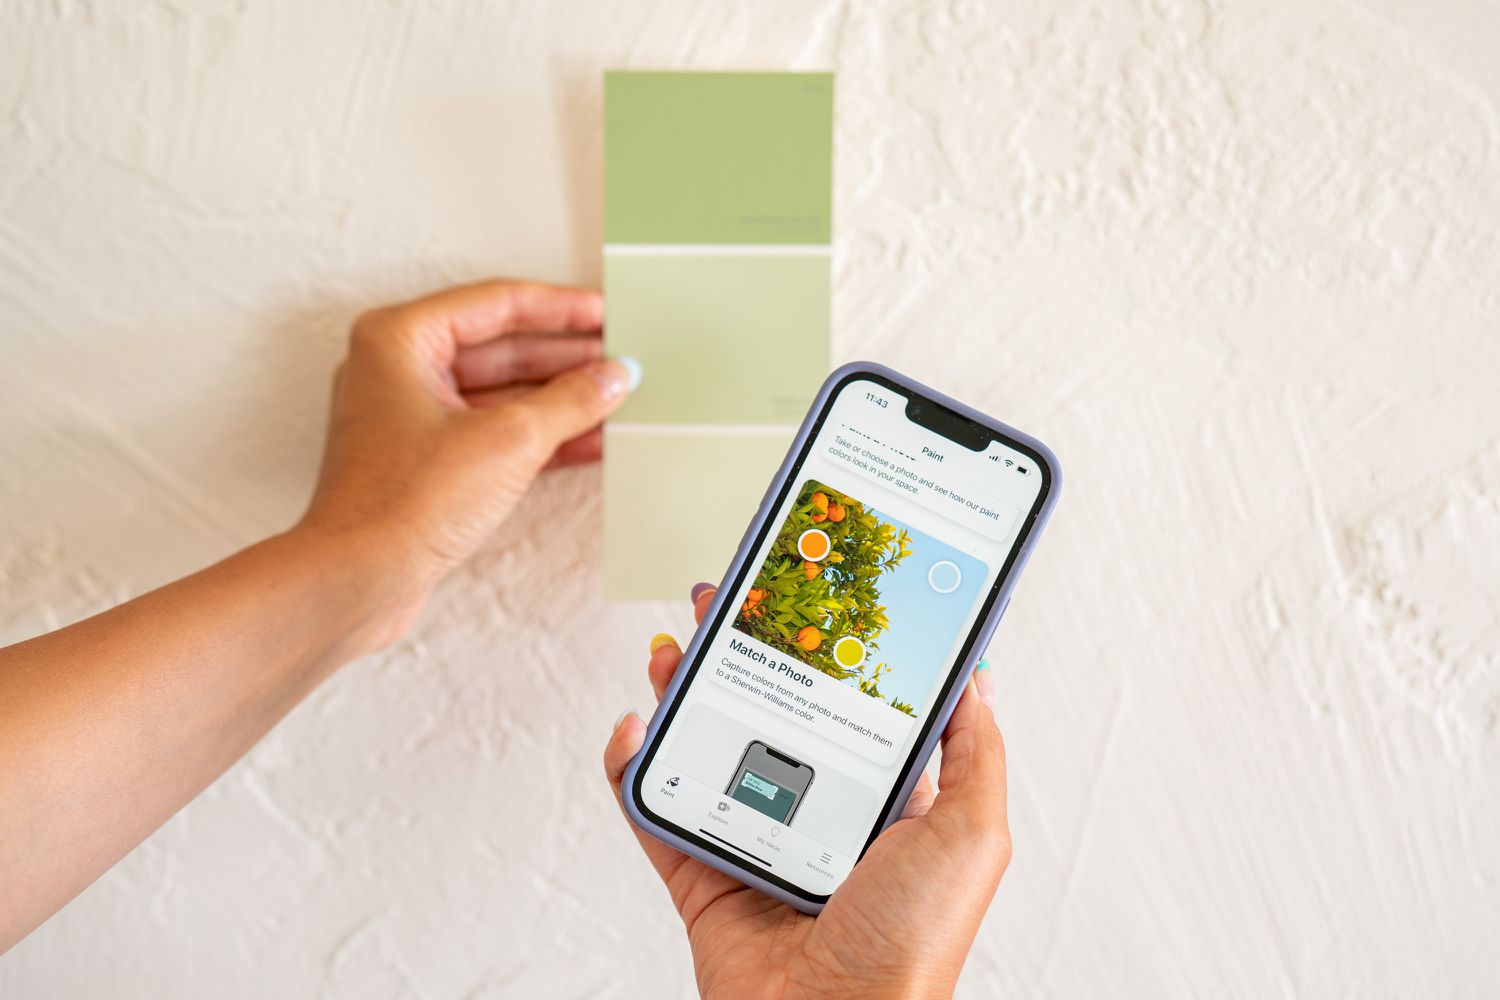 Grünes Farbmuster an der Wand neben der Farbvergleichs-App auf dem Smartphone